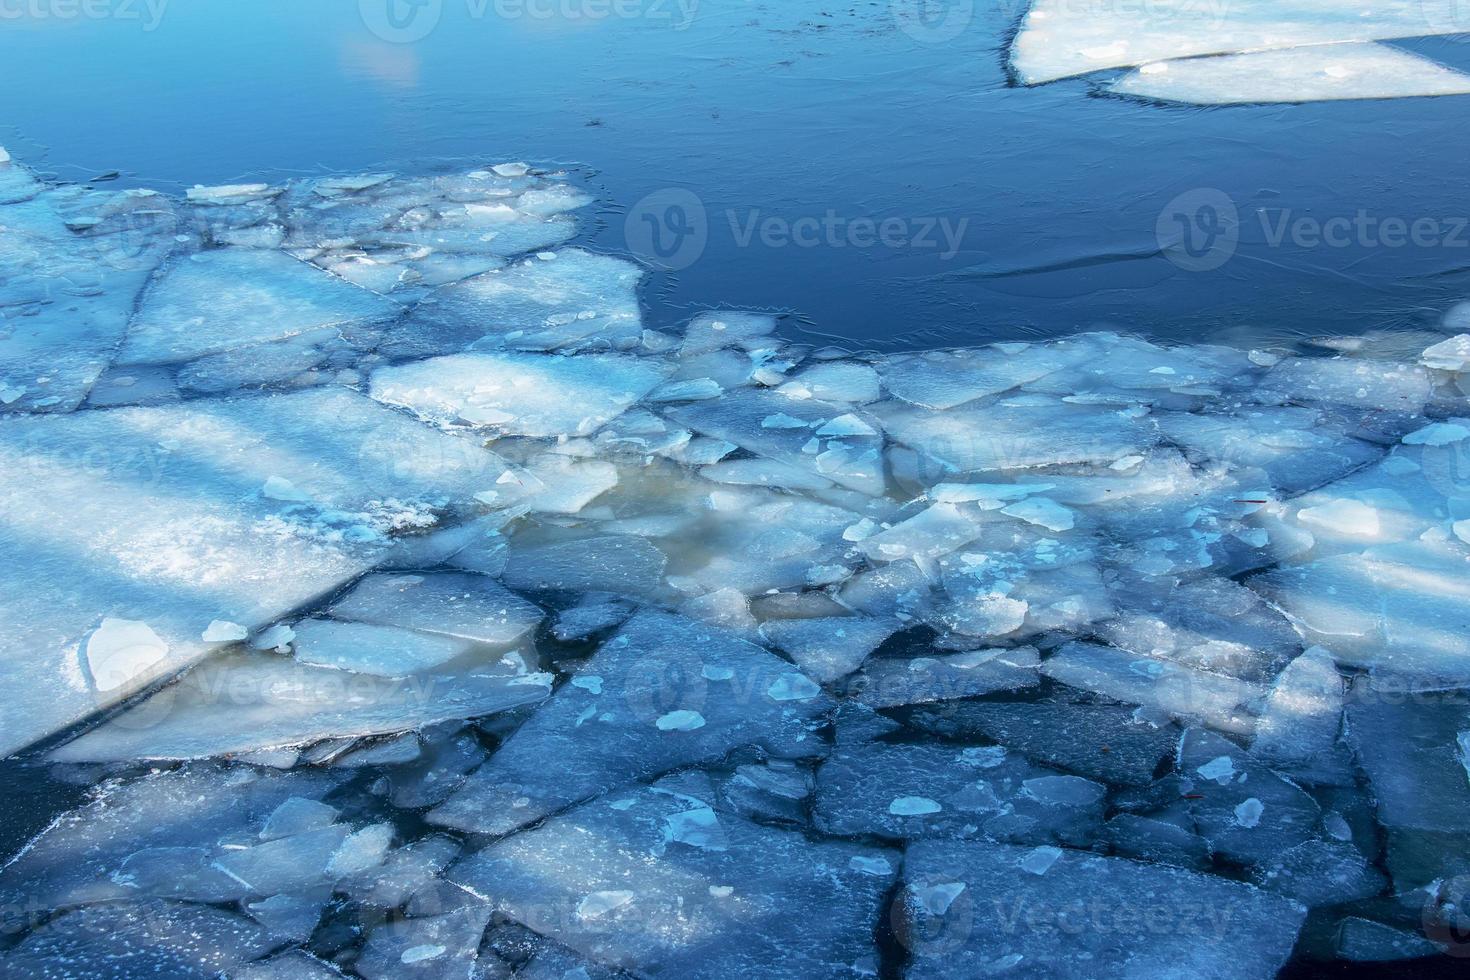 Winternaturhintergrund mit Eisblöcken auf gefrorenem Wasser im Frühjahr. abstrakter hintergrund von treibendem eis auf dem wasser foto